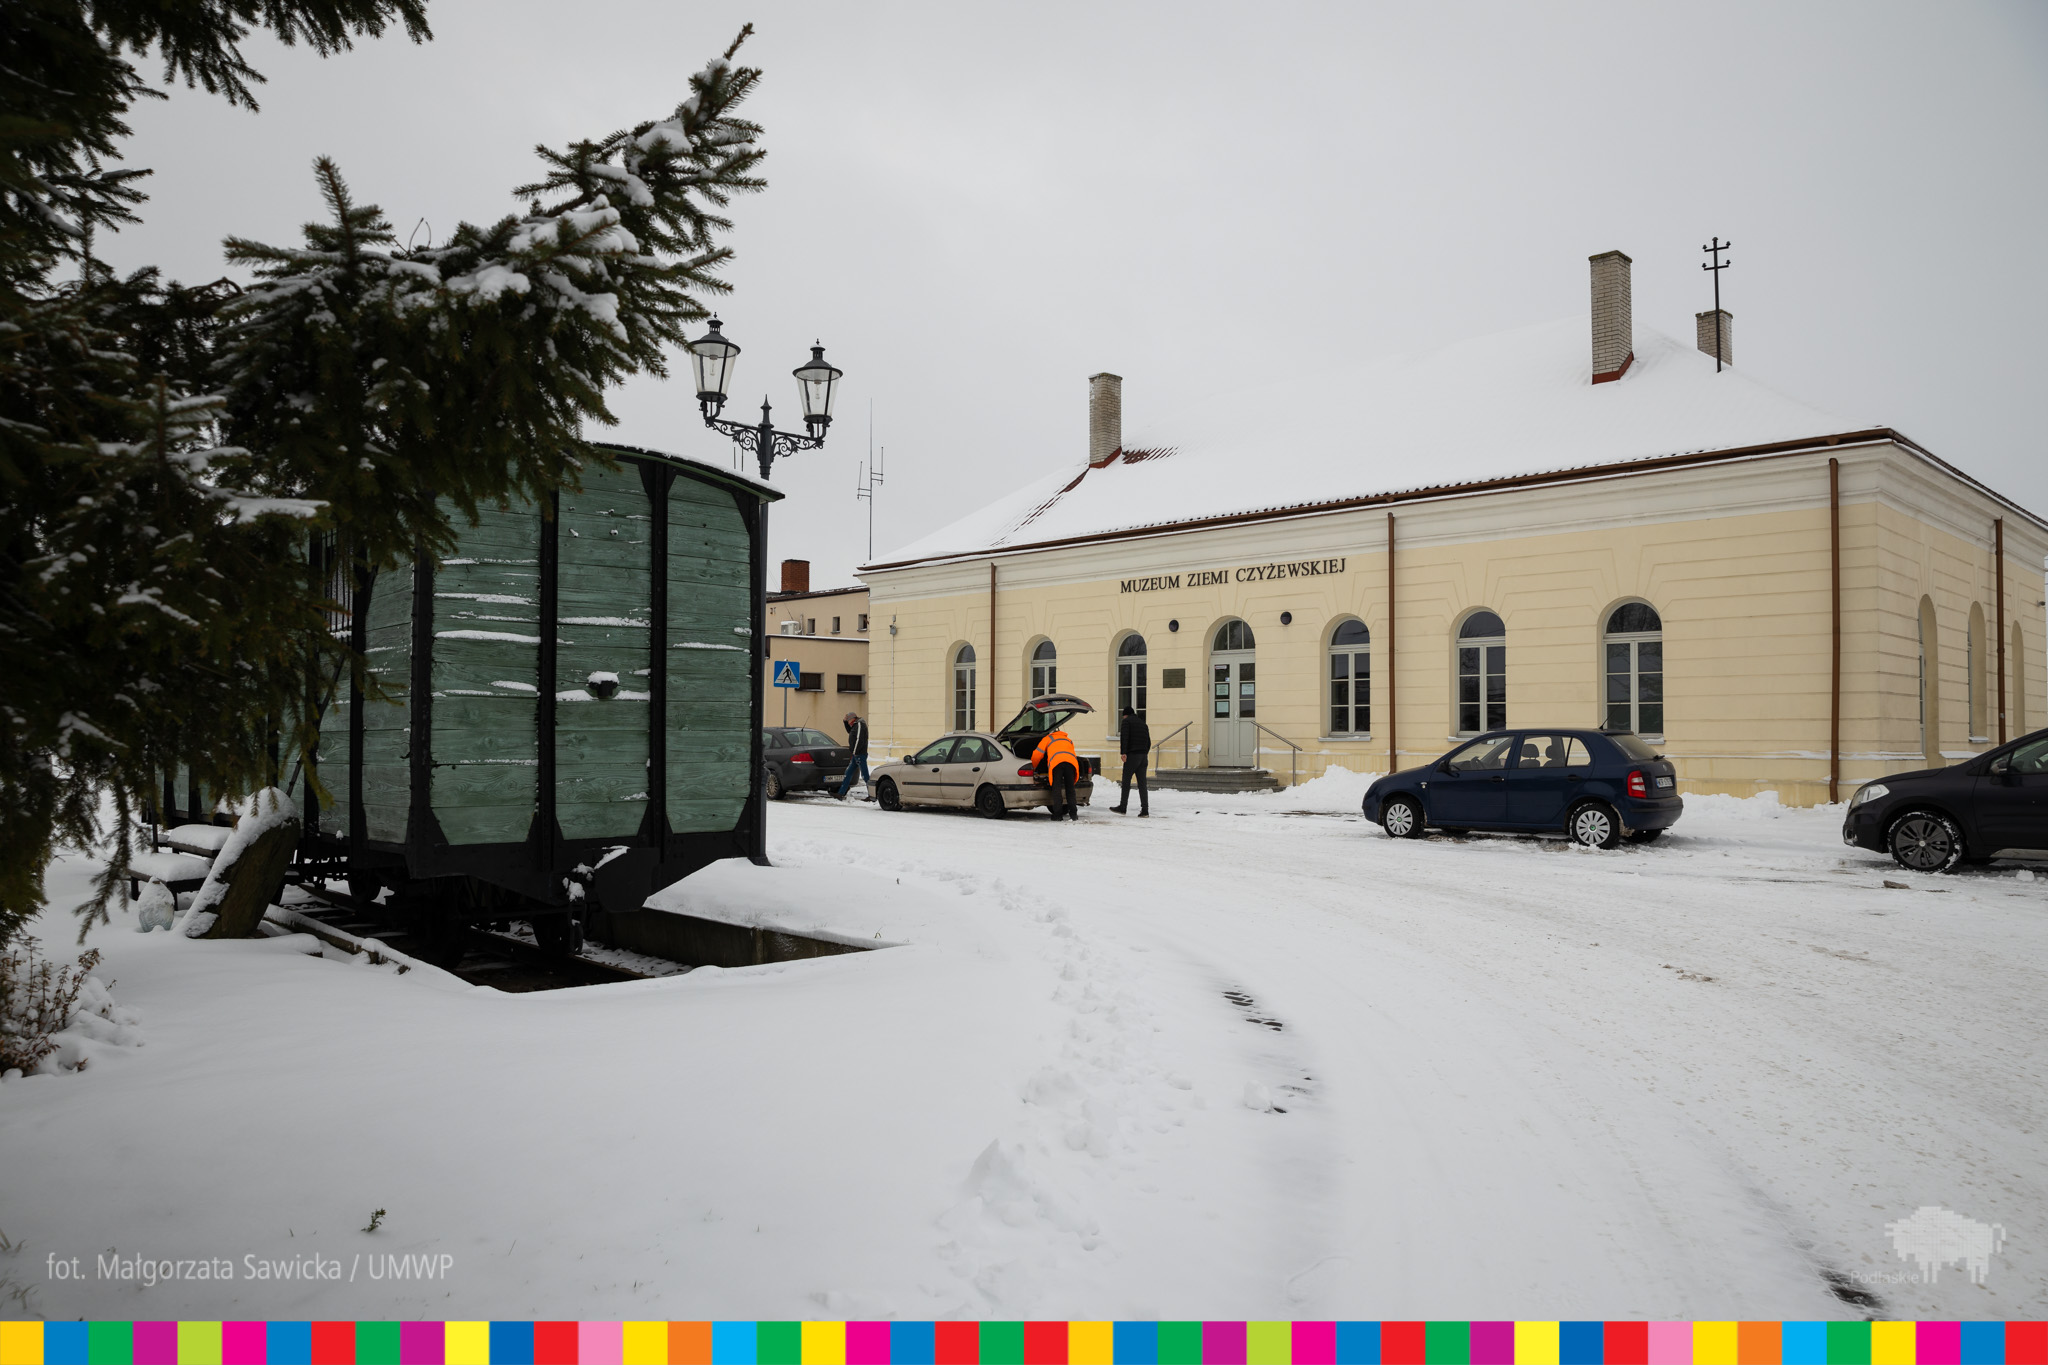 Budynek Muzeum Ziemi Czyżewskiej. Przed budynkiem stoją samochody. Obok stoi drewniany wagon